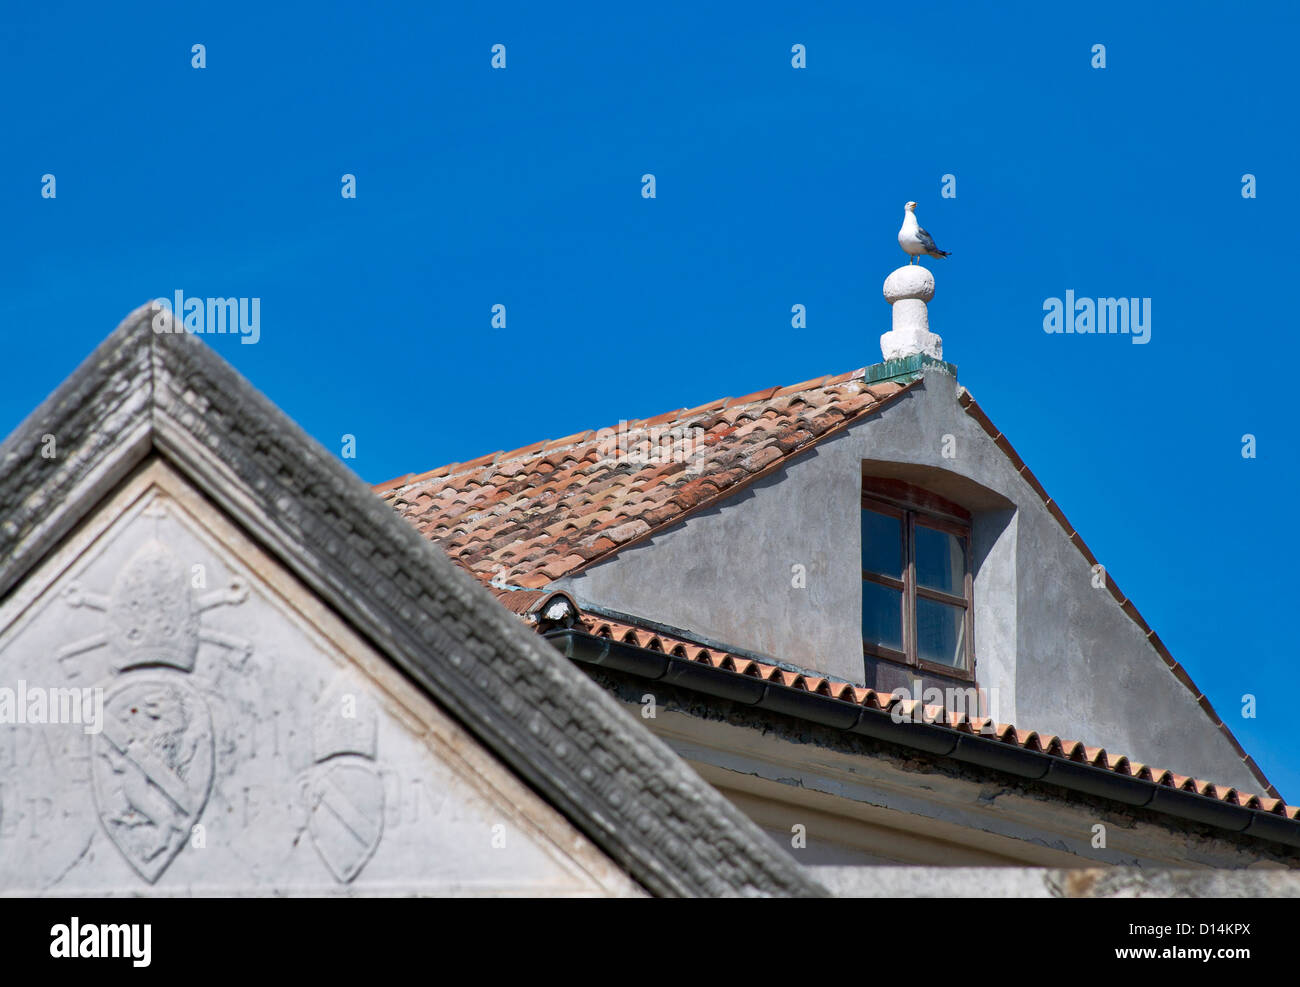 Antichi tetti di tegole e seagull. Lisbona, Portogallo. Foto Stock